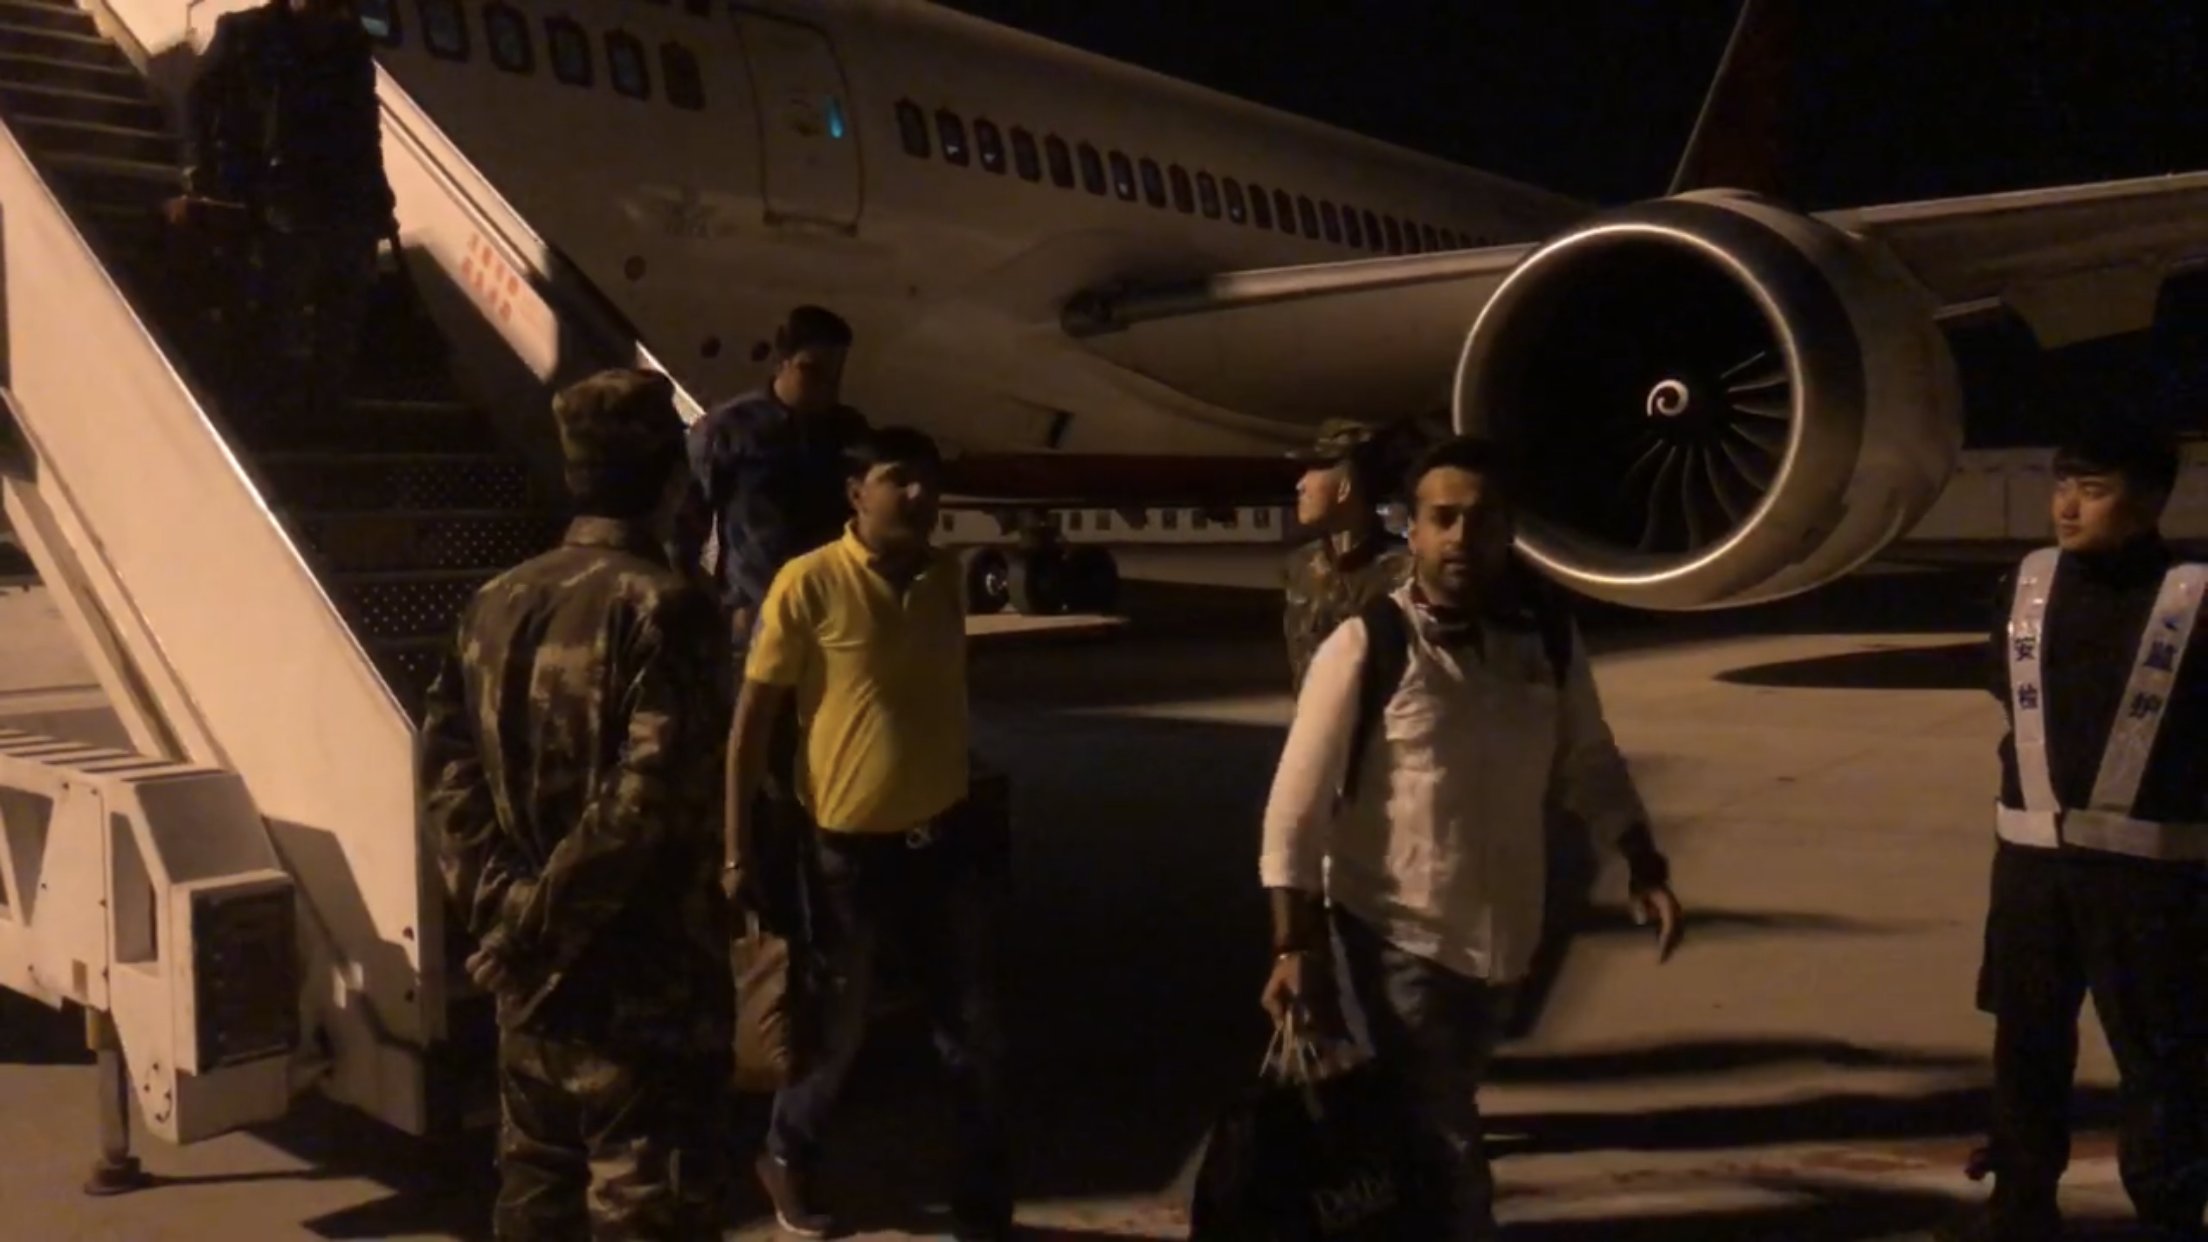 印度飞上海航班紧急备降南京机场,南京边检保